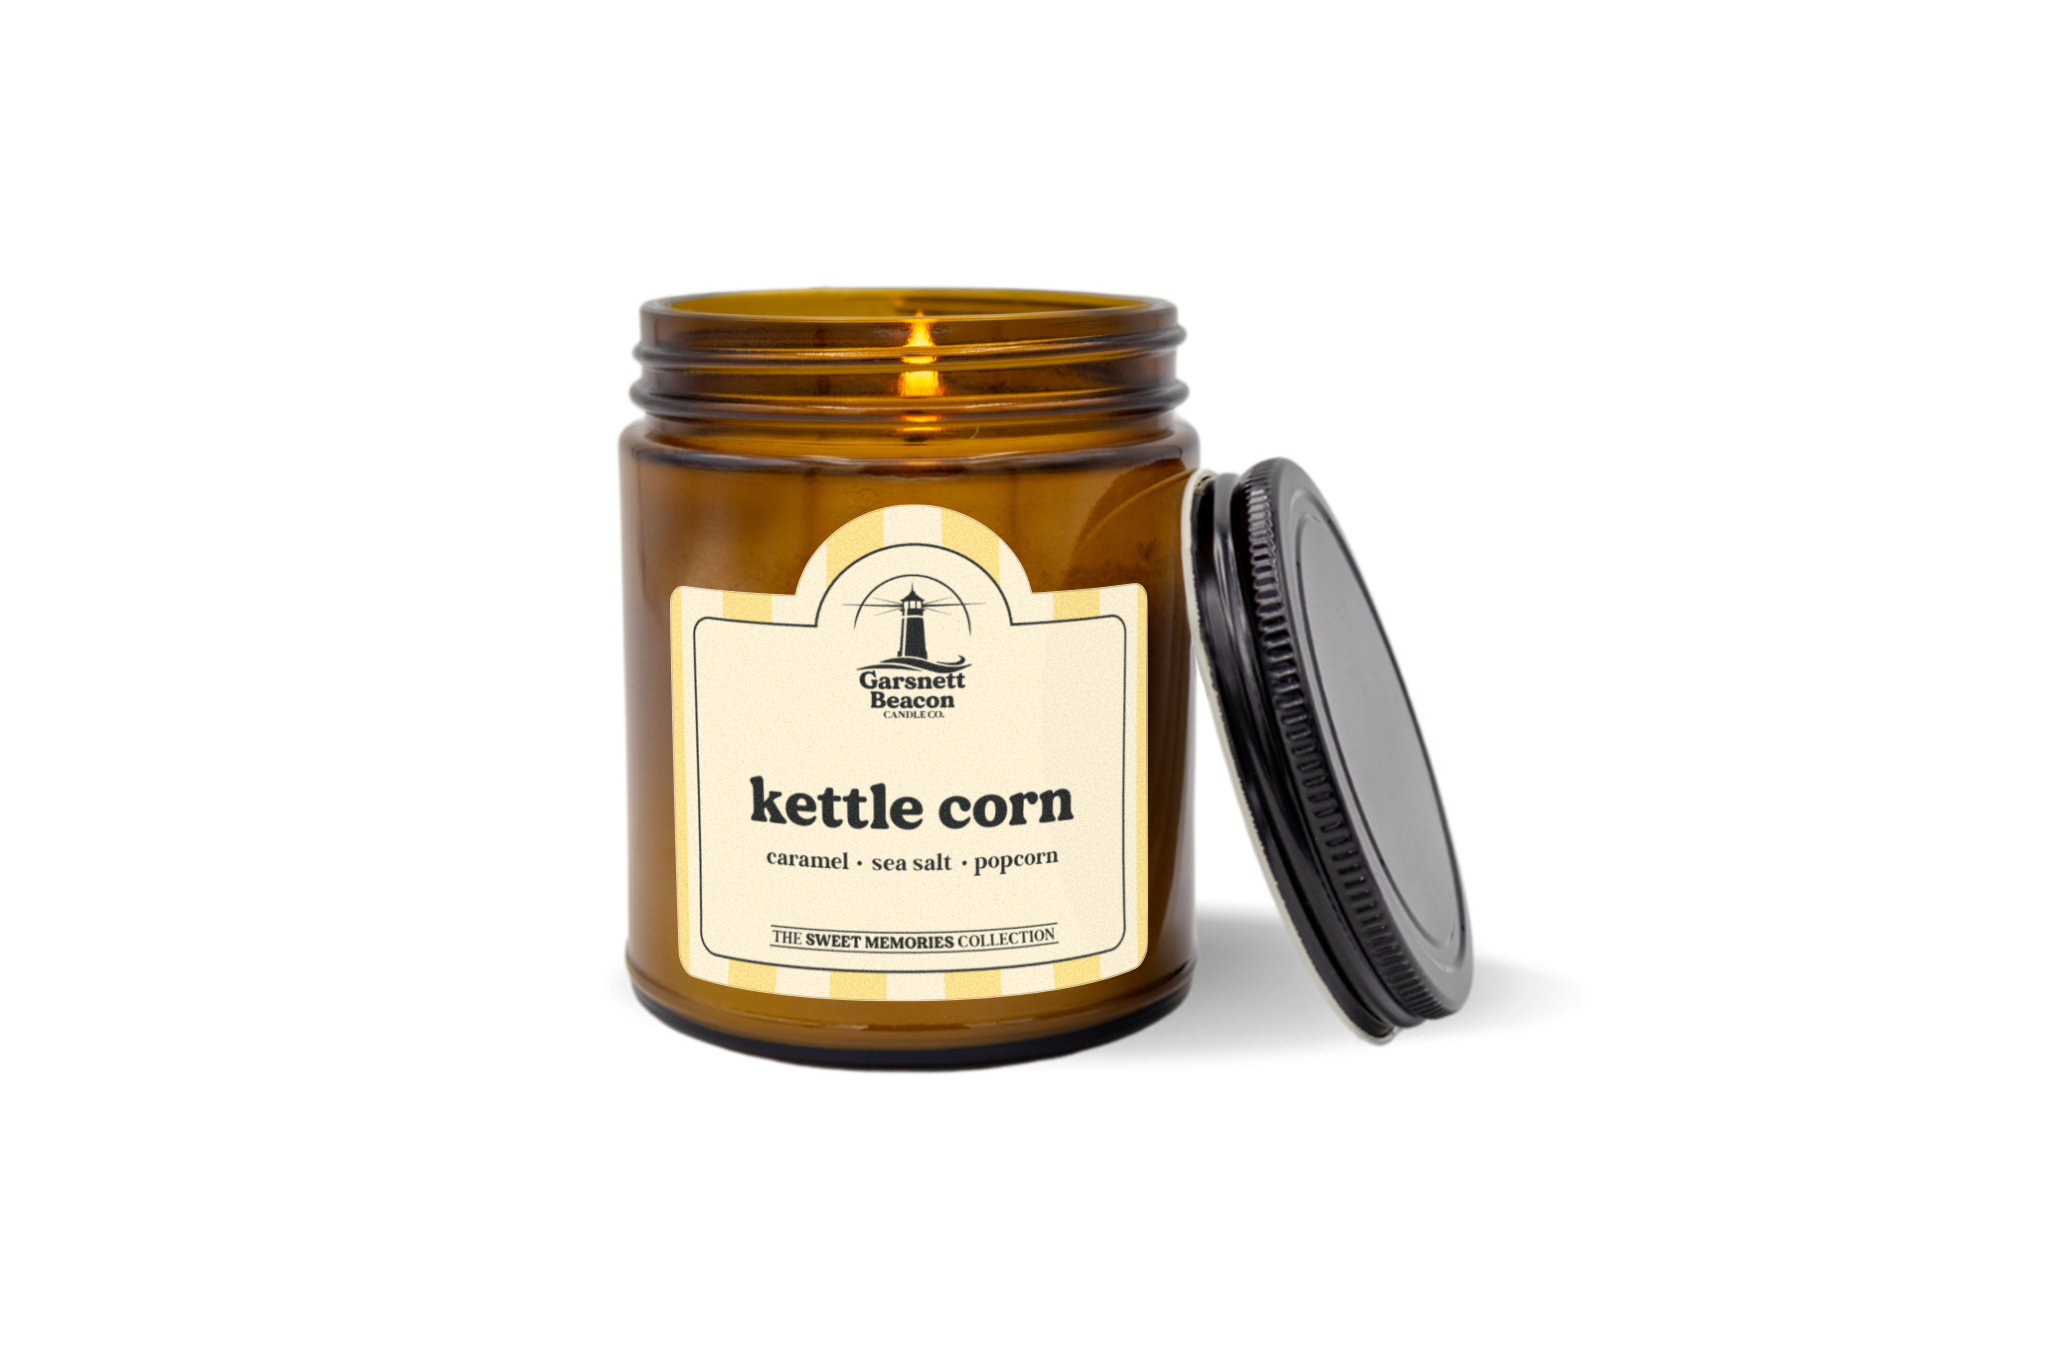 Kettle Corn Candle - Caramel, Sea Salt, Popcorn Scent